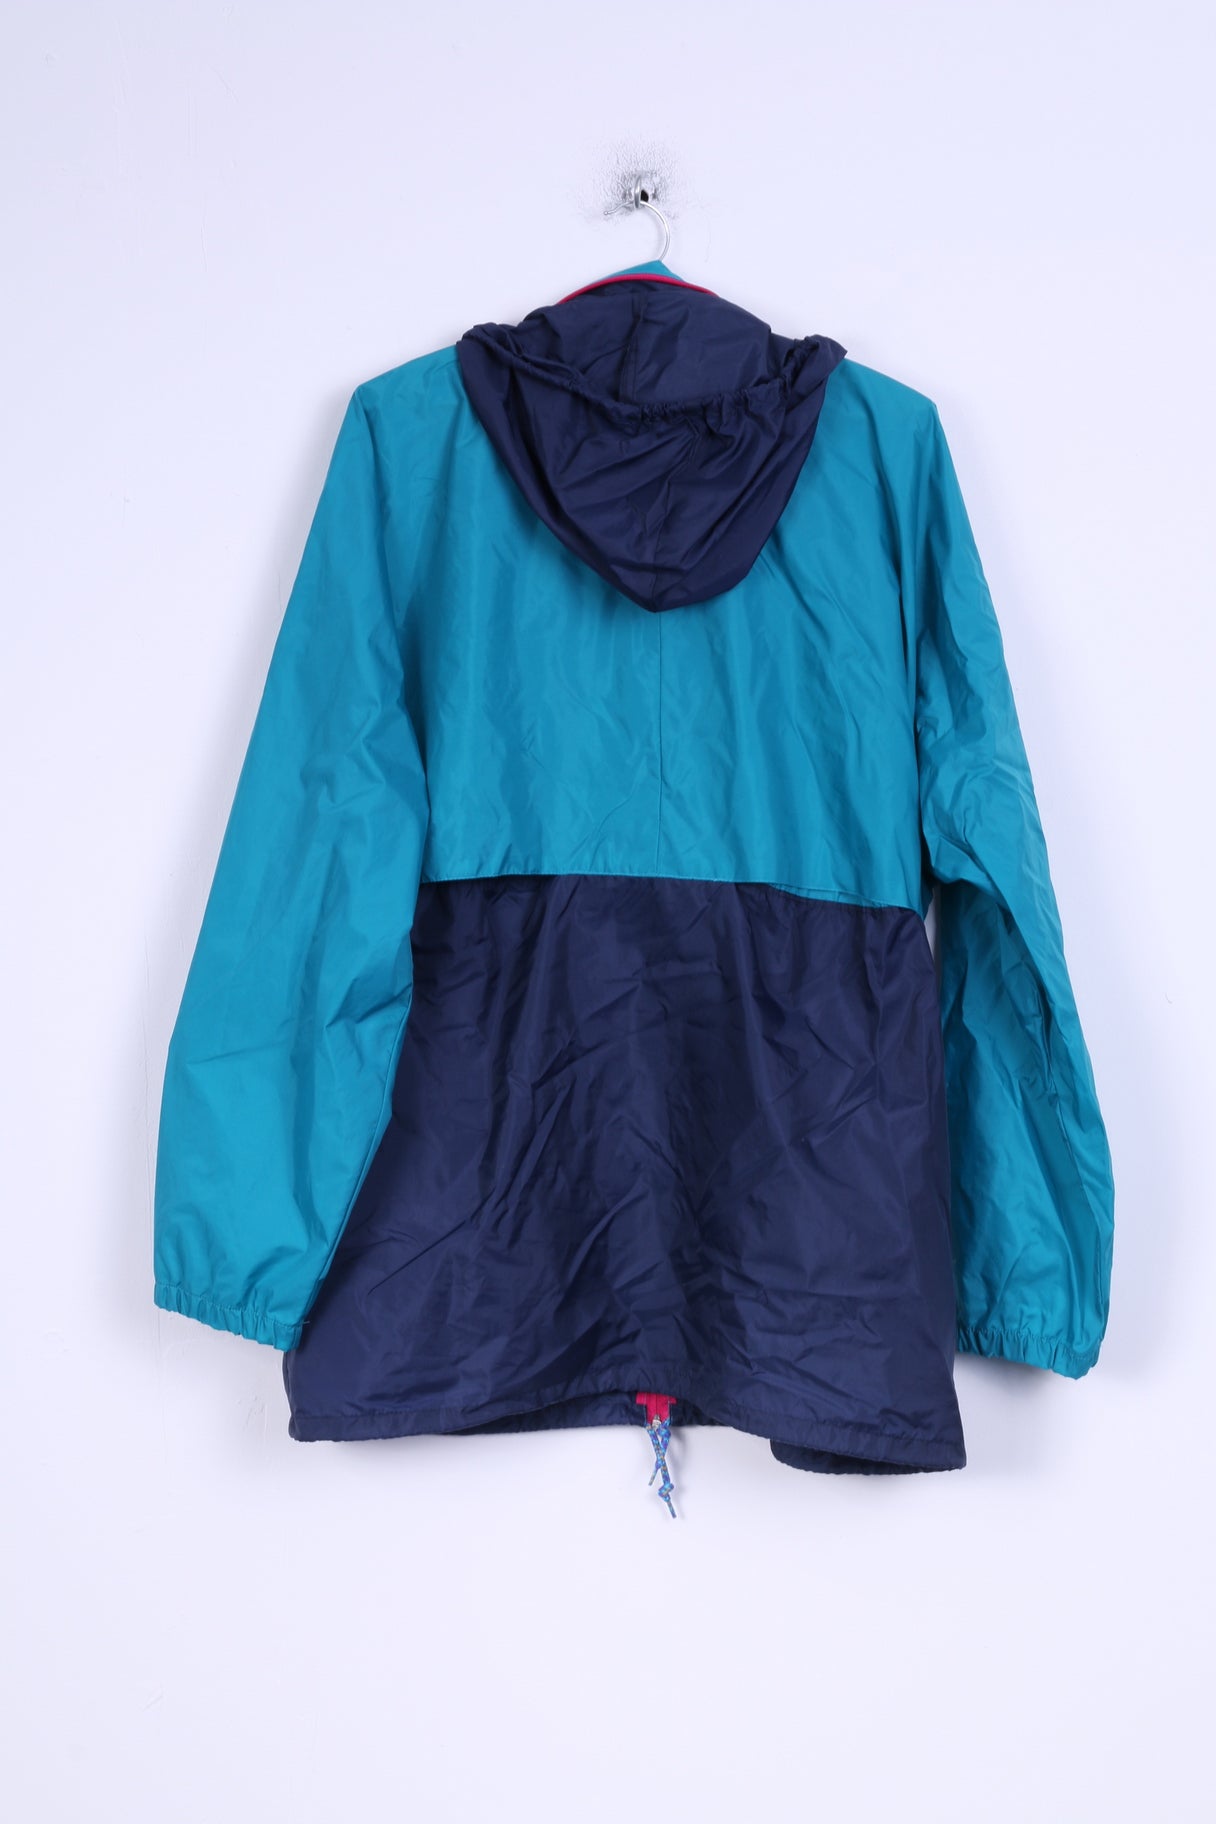 Jeantex Mens L Rain Jacket Sportswear Nylon Waterproof Hodded Top ...